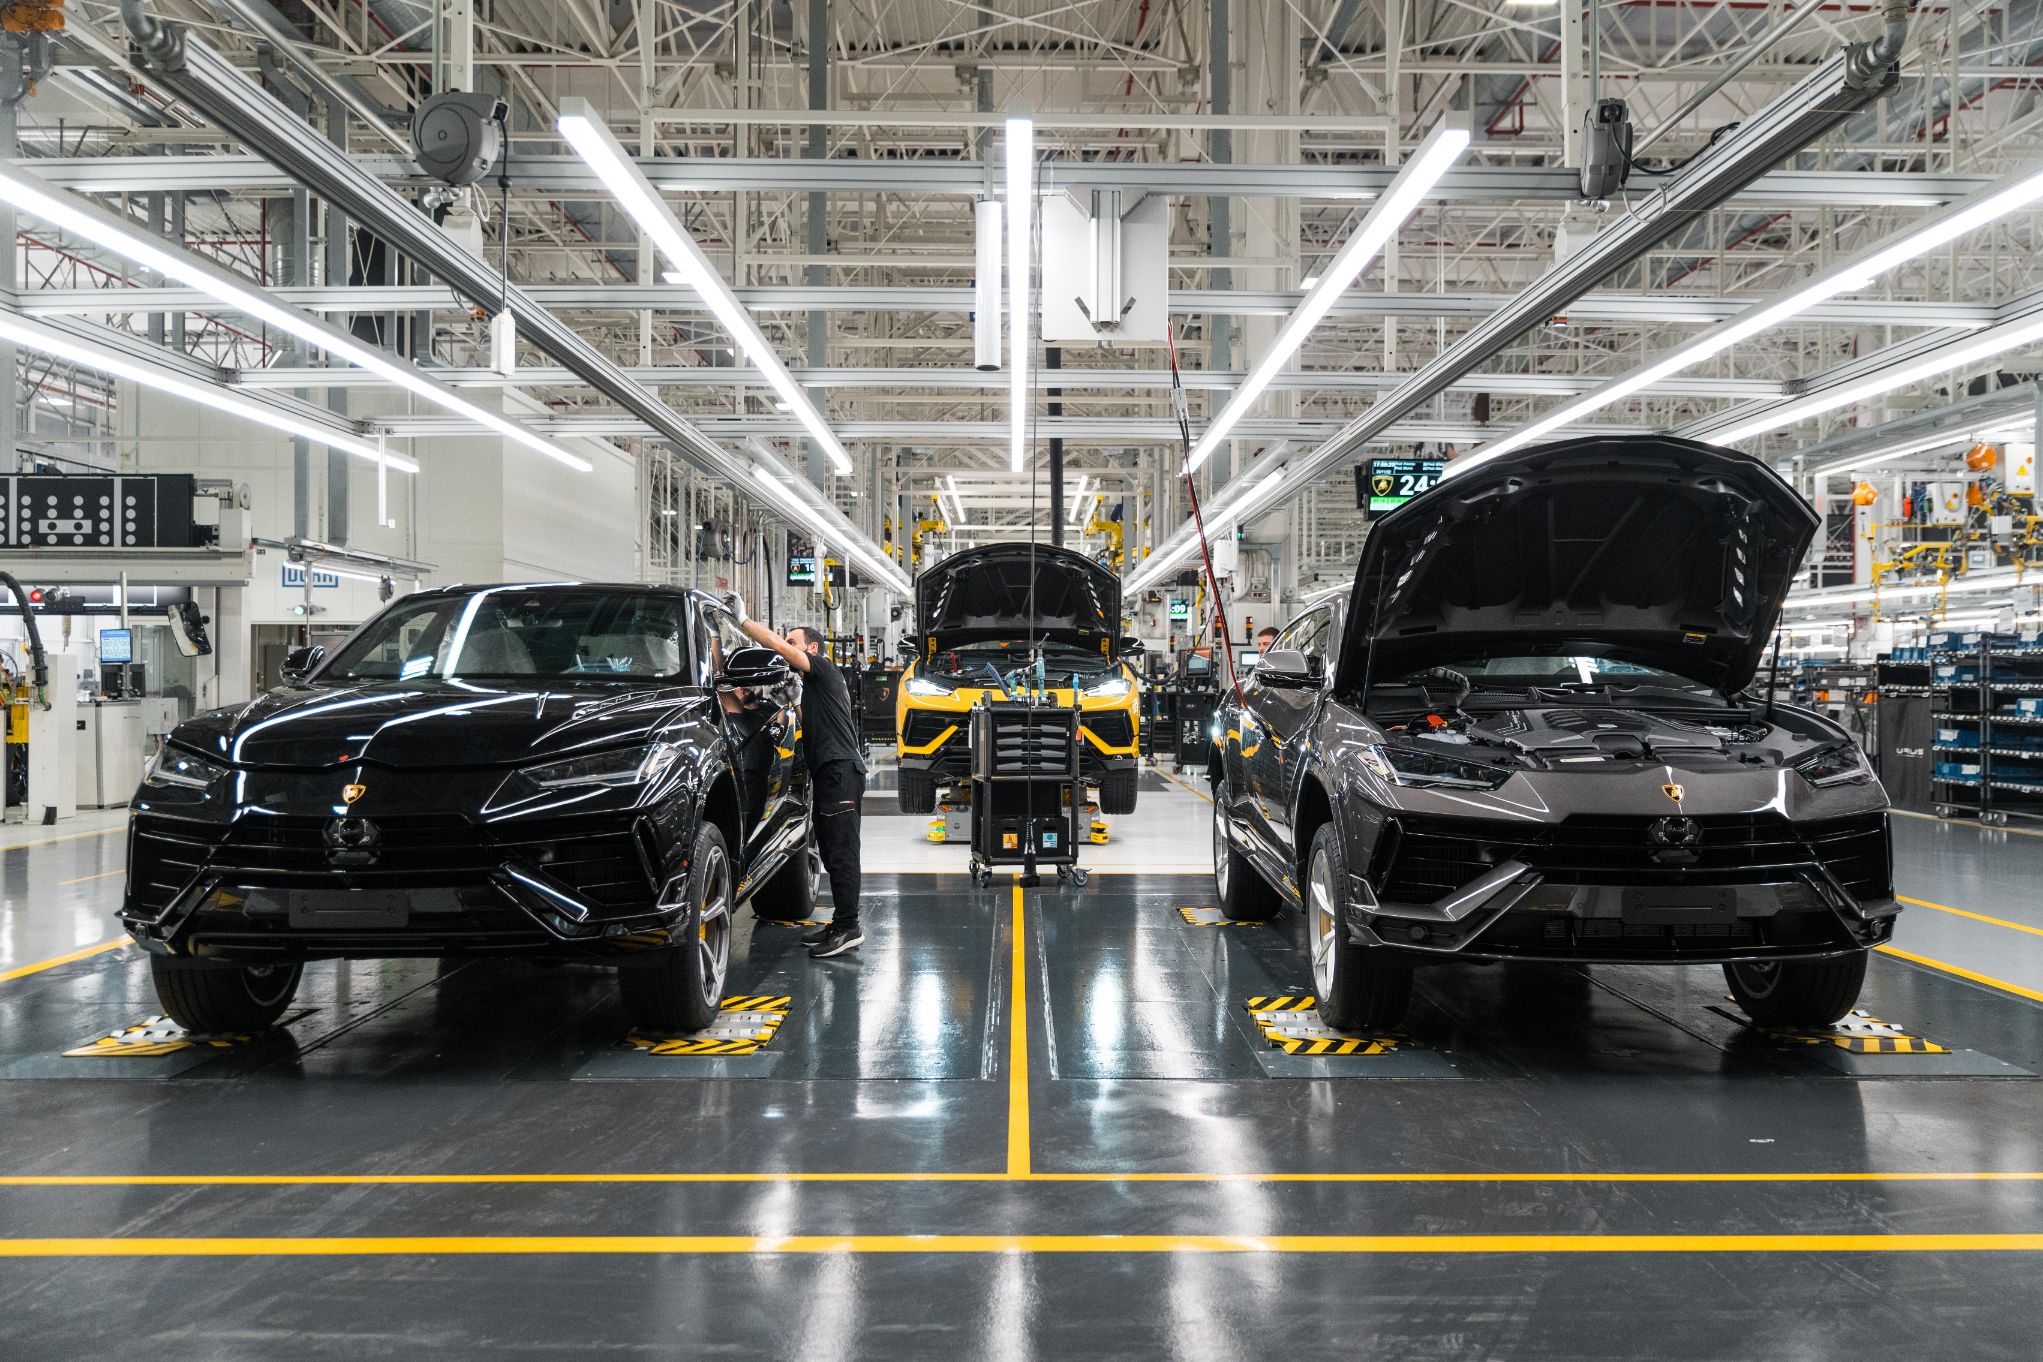 Urus Production 4 Automobili Lamborghini   Hành trình 60 năm phát triển của nhà máy và những tên tuổi siêu xe 